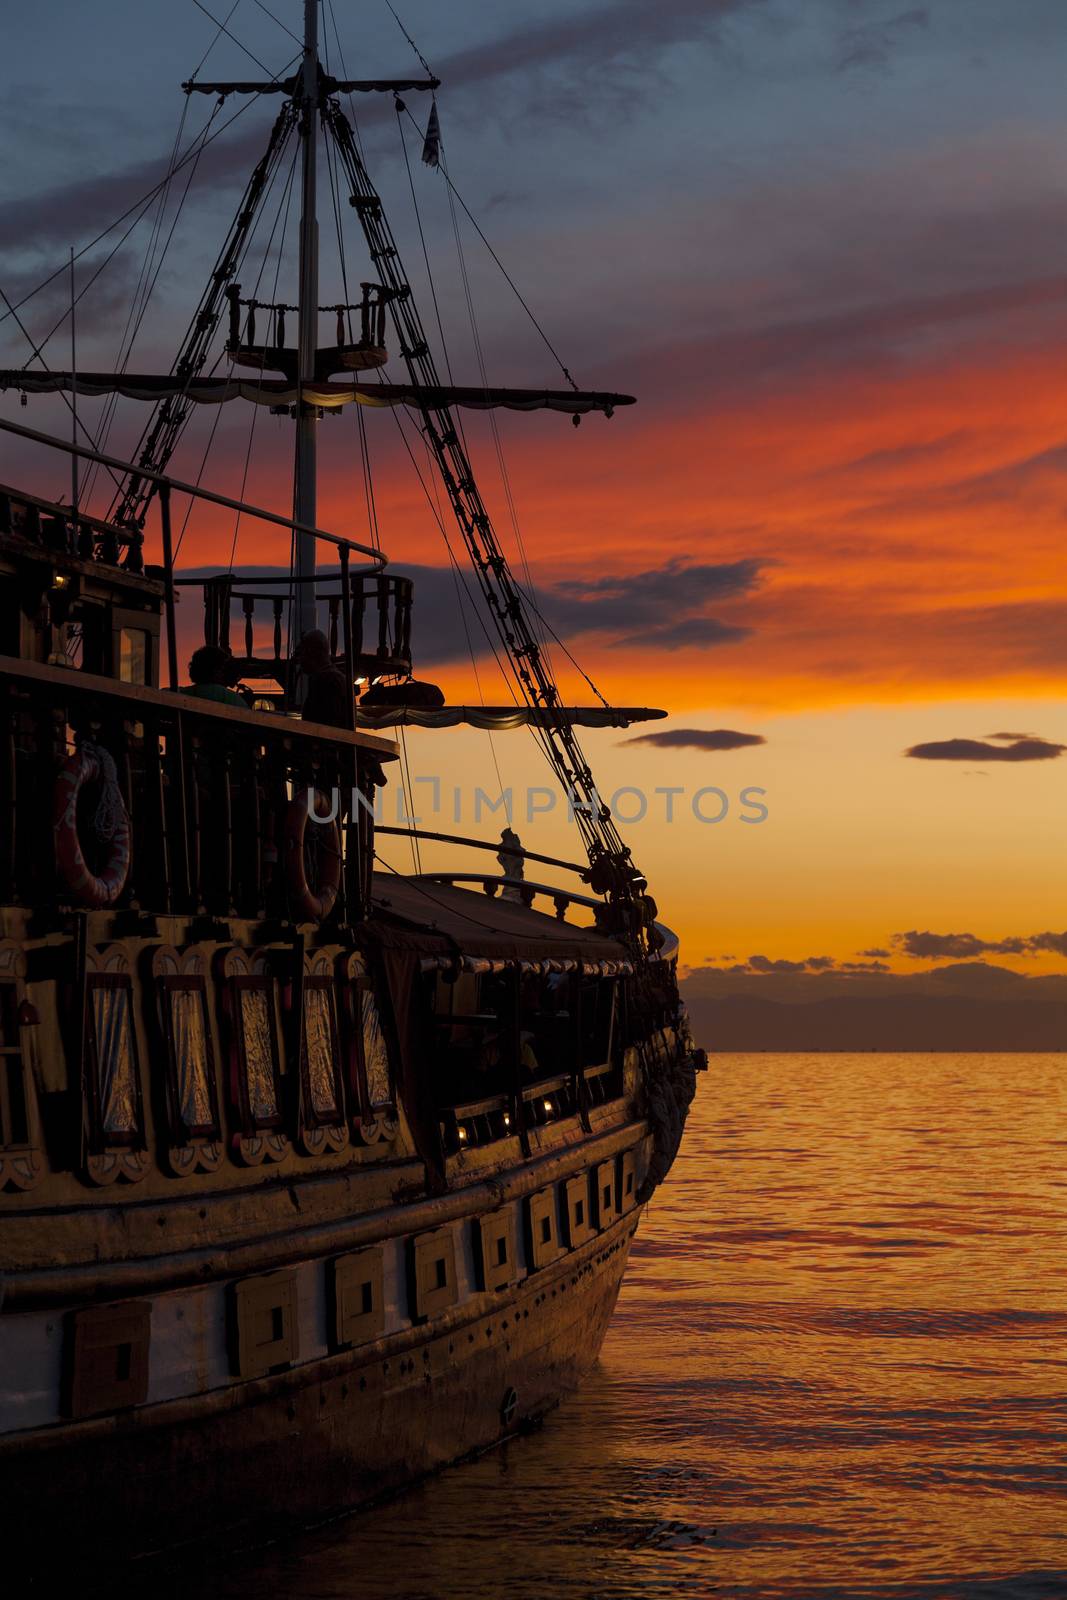 Old Fashion Sail Boat near Harbor at Sunset in Thessaloniki - Greece